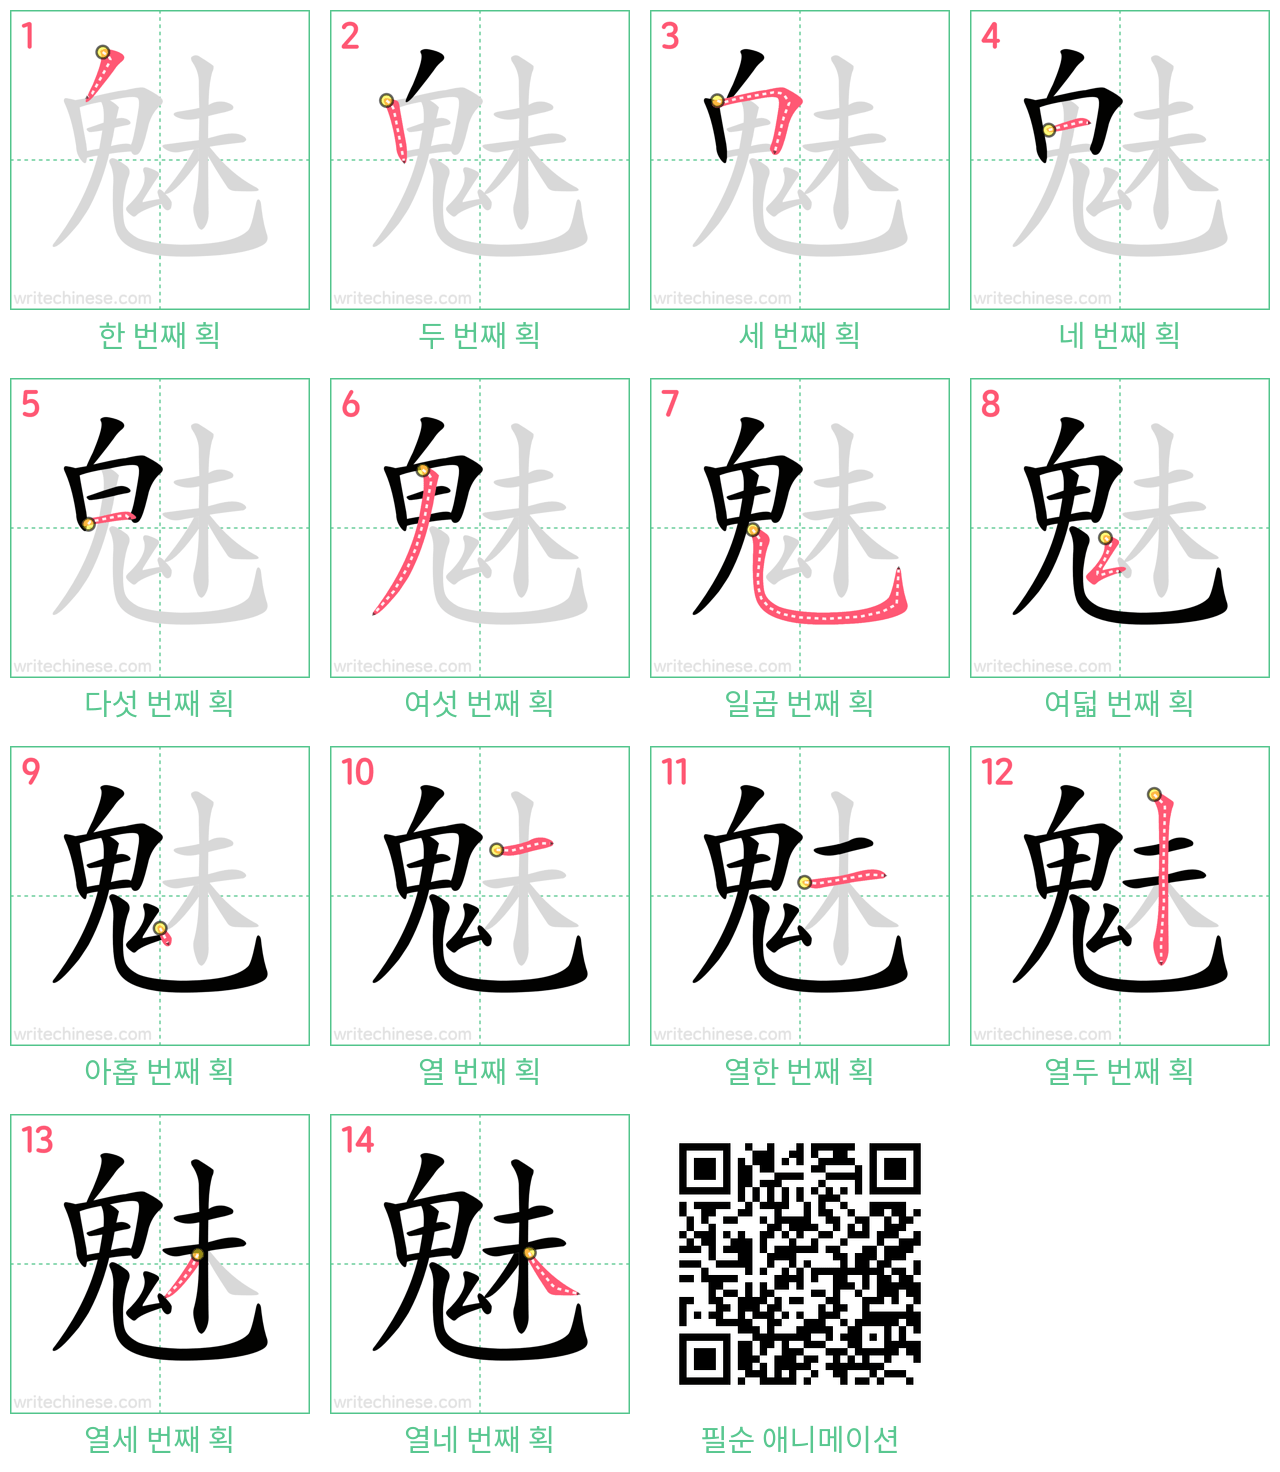 魅 step-by-step stroke order diagrams